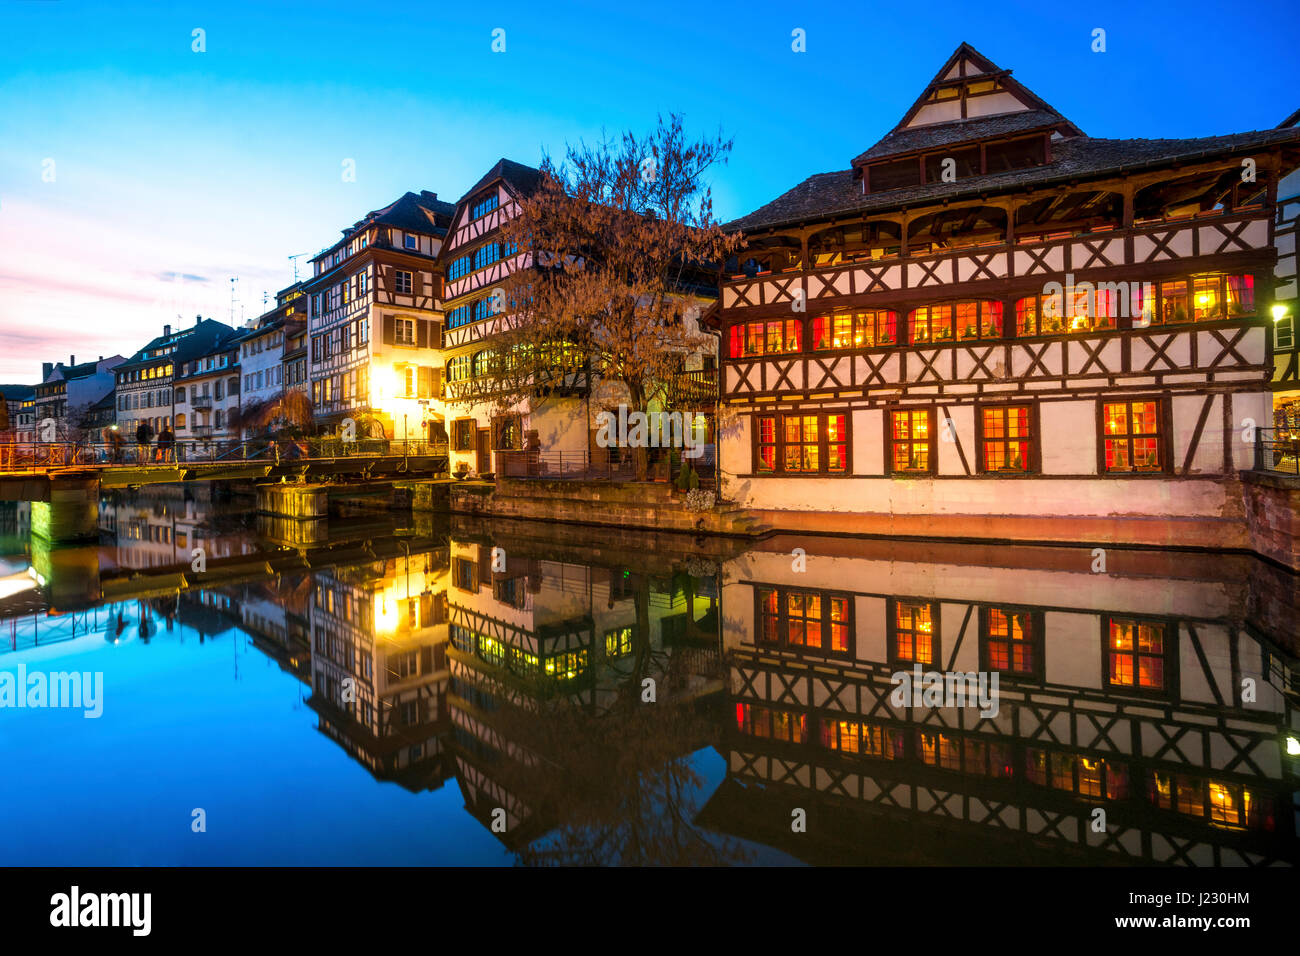 Frankreich, Straßburg, La Petite France, mit Fachwerkhäusern und L'Ill Fluss im Vordergrund zur blauen Stunde Stockfoto